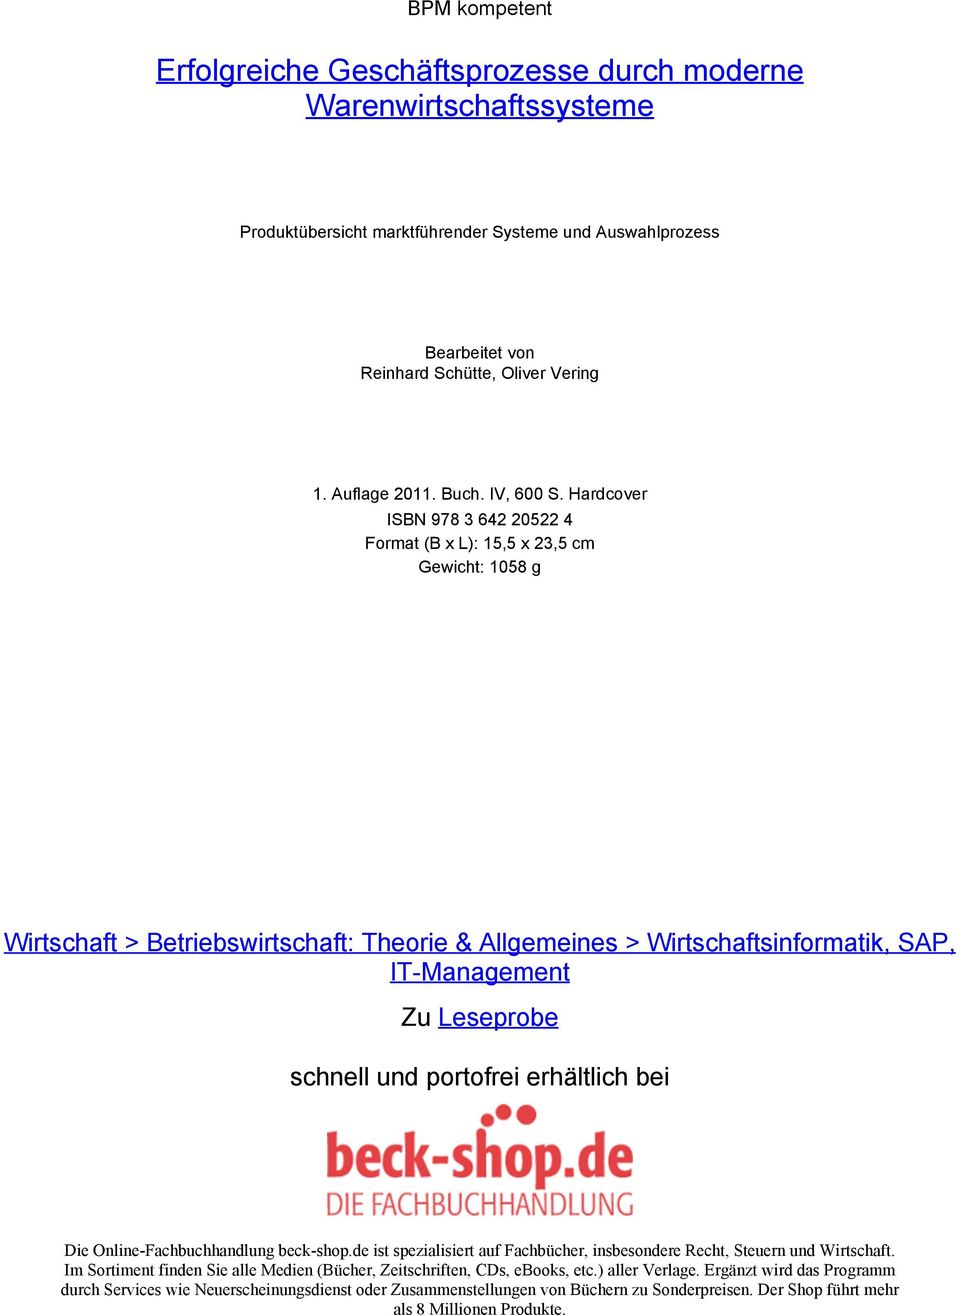 Hardcover ISBN 978 3 642 20522 4 Format (B x L): 15,5 x 23,5 cm Gewicht: 1058 g Wirtschaft > Betriebswirtschaft: Theorie & Allgemeines > Wirtschaftsinformatik, SAP, IT-Management Zu Leseprobe schnell